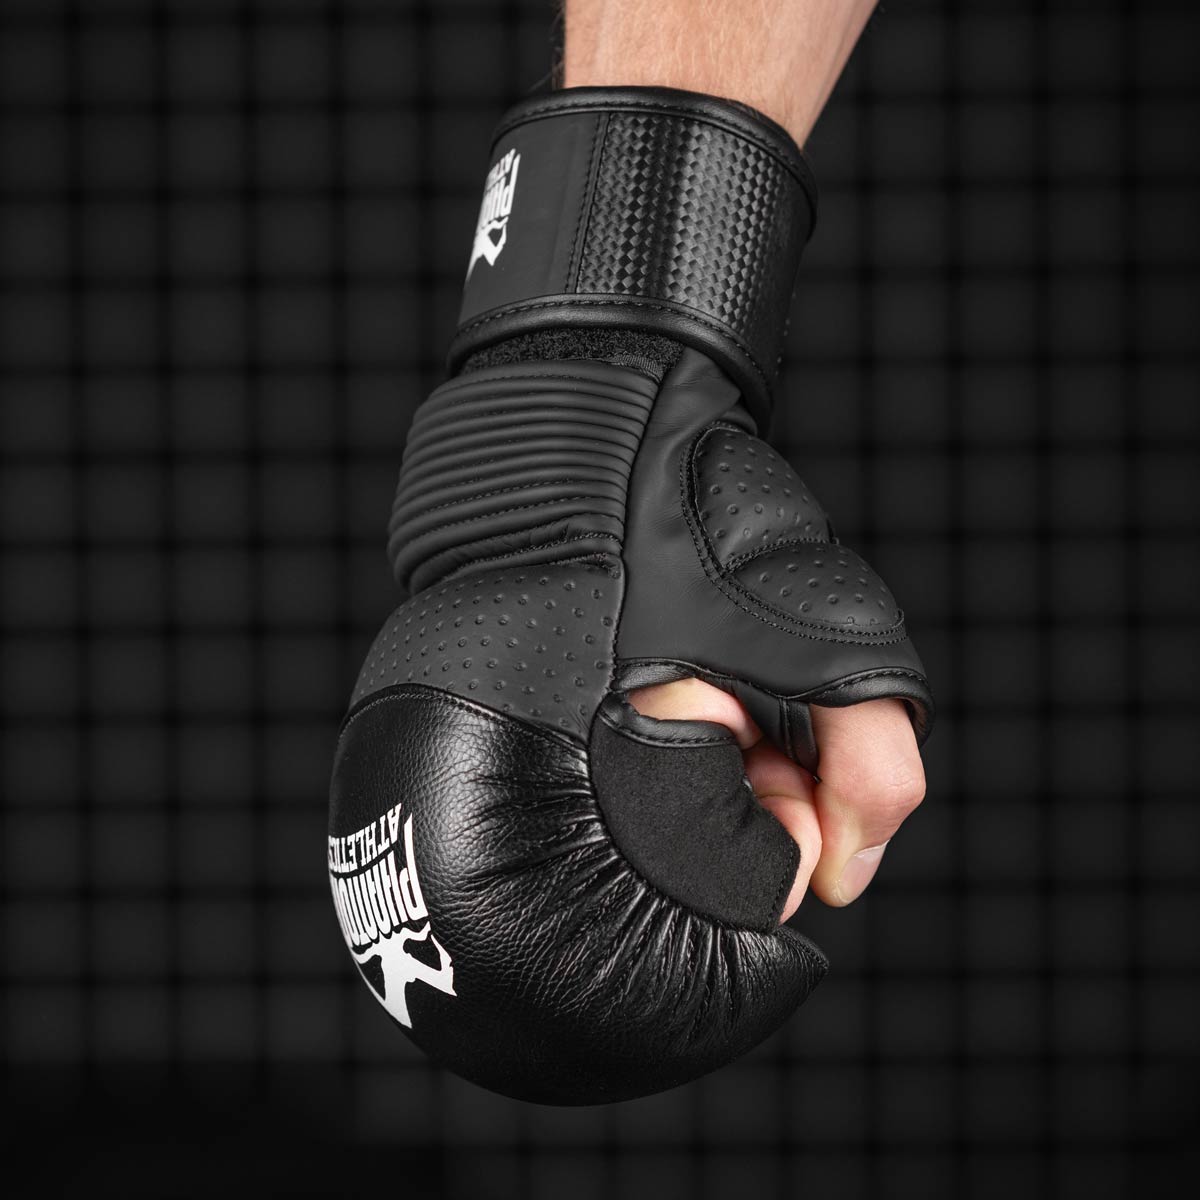 Die Phantom RIOT PRO MMA Sparringshandschuhe. Ideal für dein Kampfsport Training und Amateur Wettkämpfe. Die hochwertigsten und sichersten MMA Handschuhe auf dem Markt.  Perfekte Passform und überragende Qualität für Training und Sparring. Die 360 Grad Konstruktion schützt deine komplette Hand.